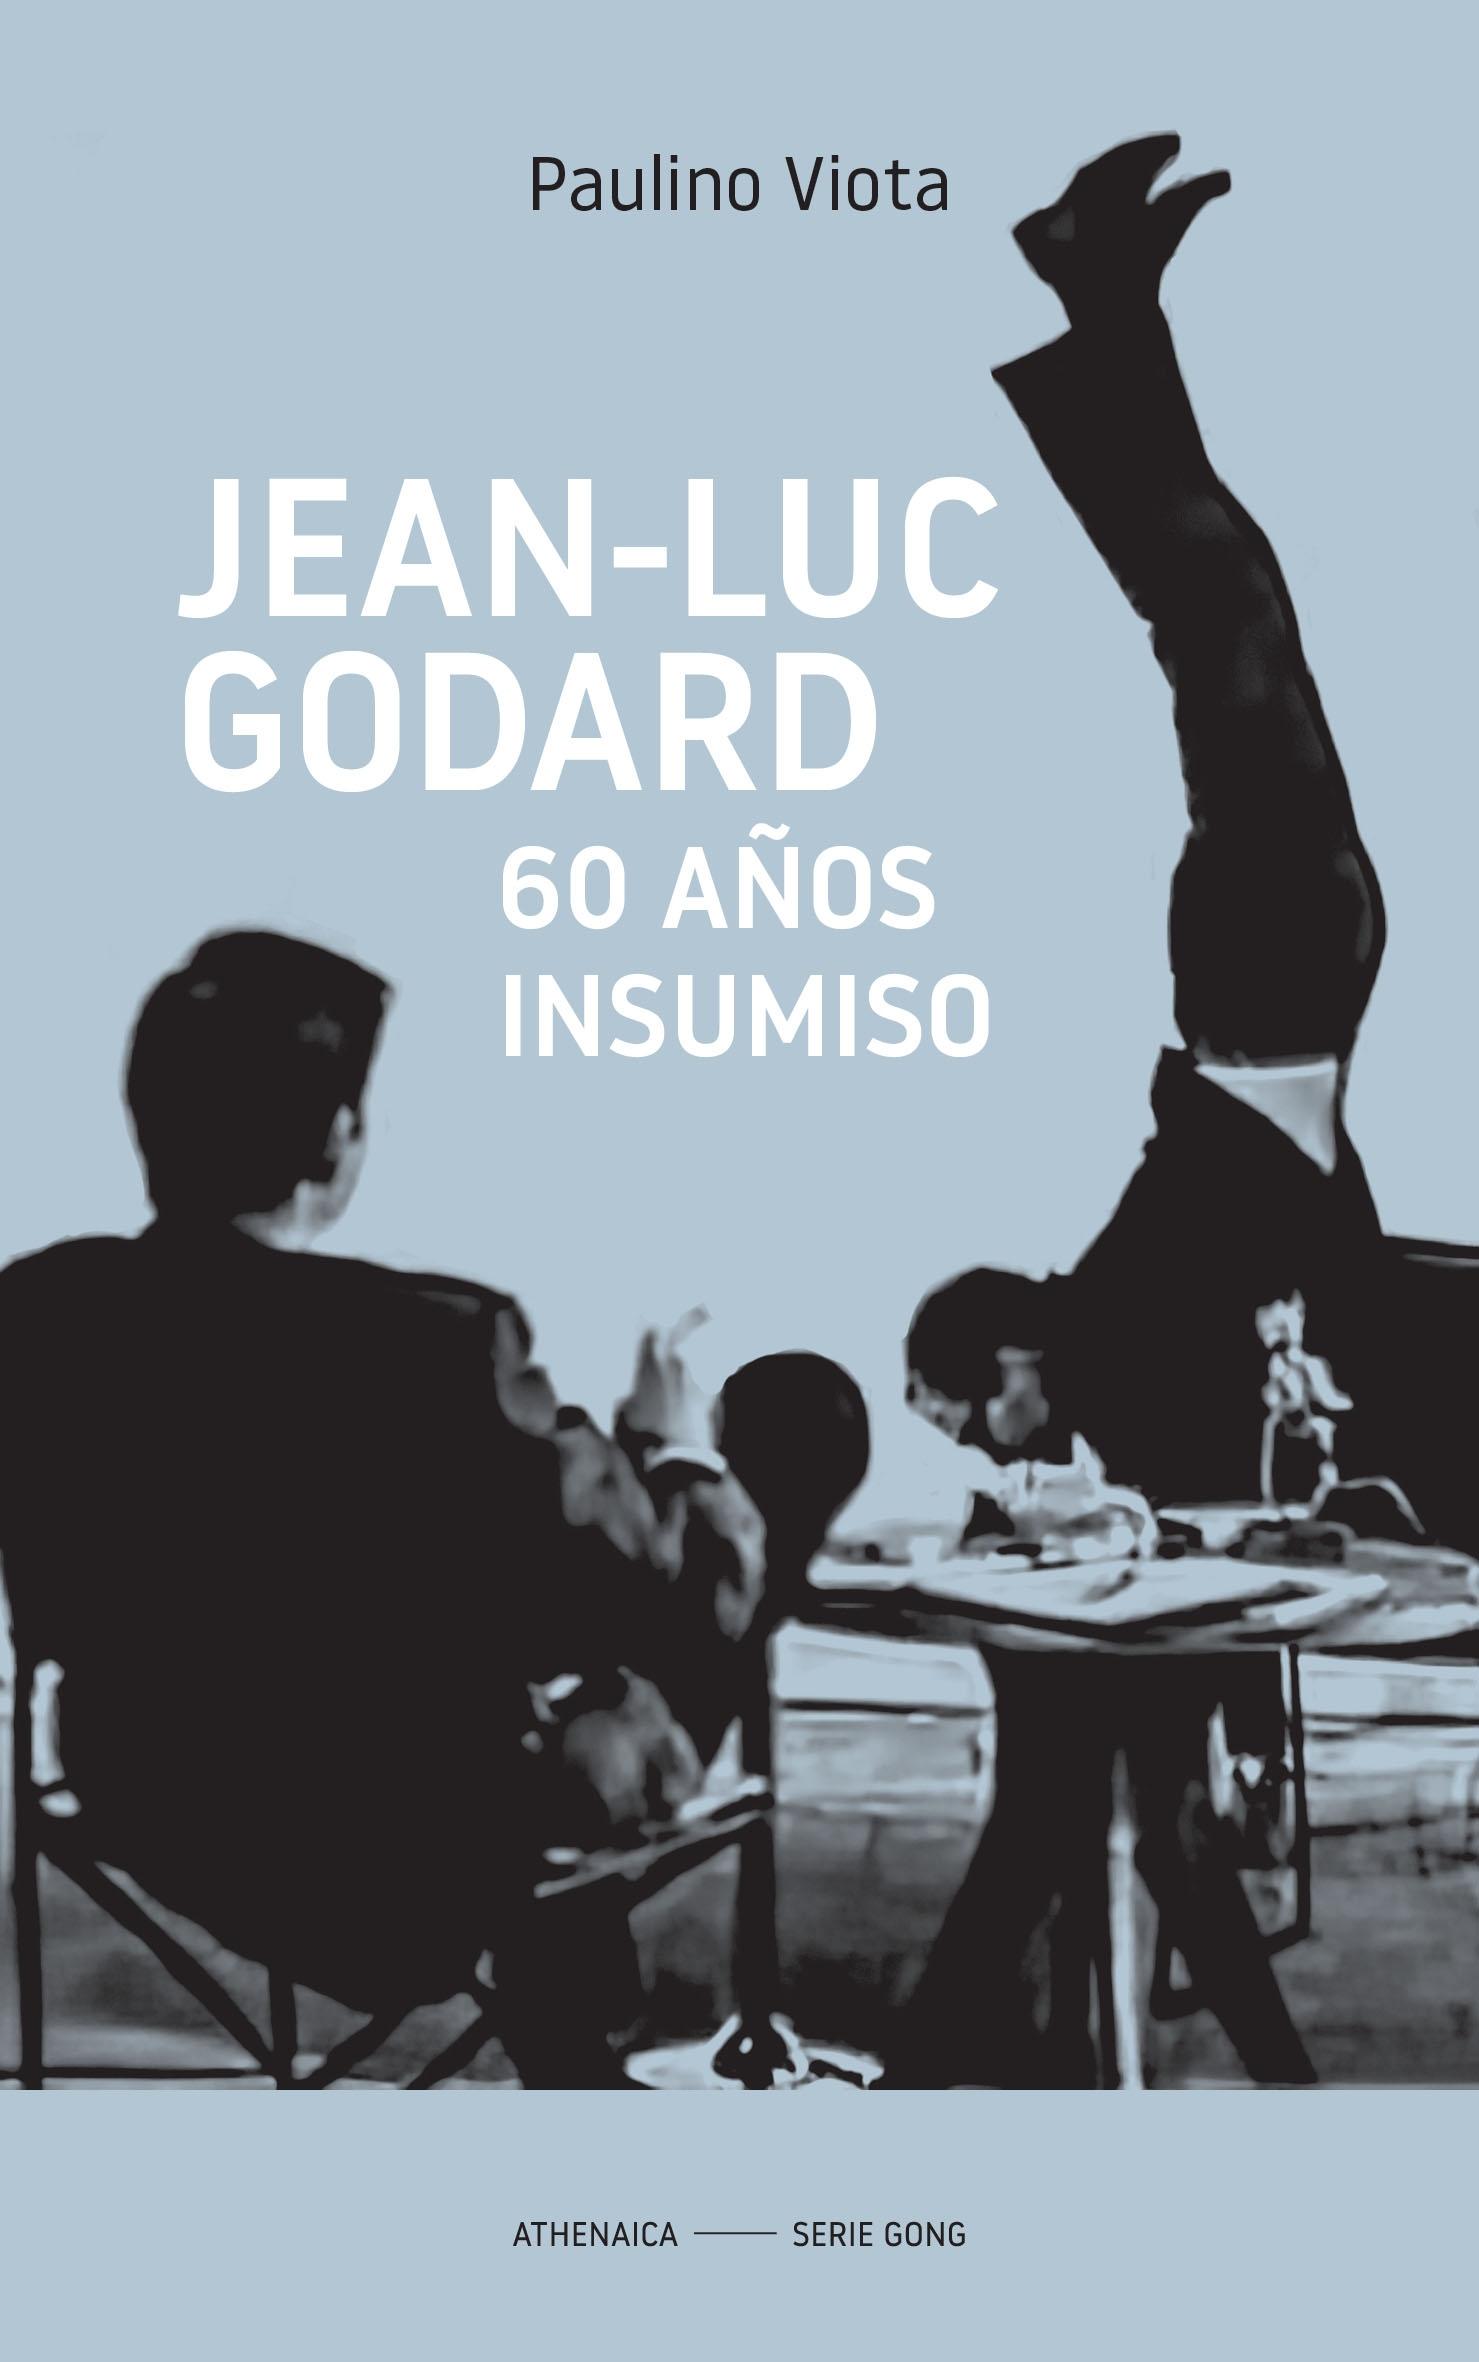 Jean-Luc Godard "60 Años Insumiso". 